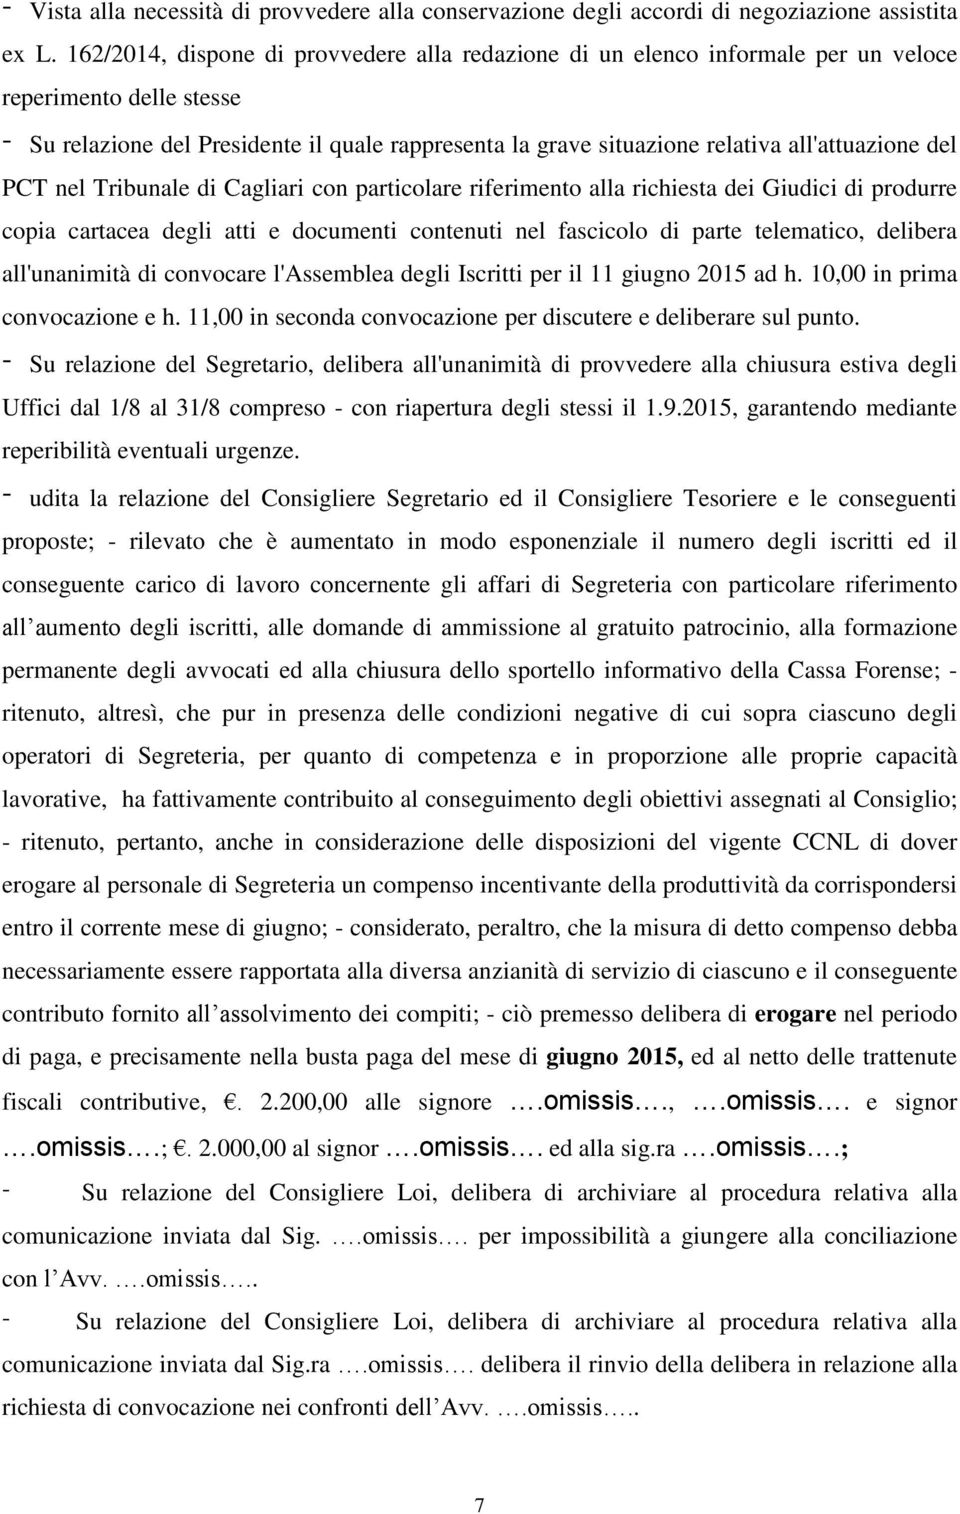 all'attuazione del PCT nel Tribunale di Cagliari con particolare riferimento alla richiesta dei Giudici di produrre copia cartacea degli atti e documenti contenuti nel fascicolo di parte telematico,